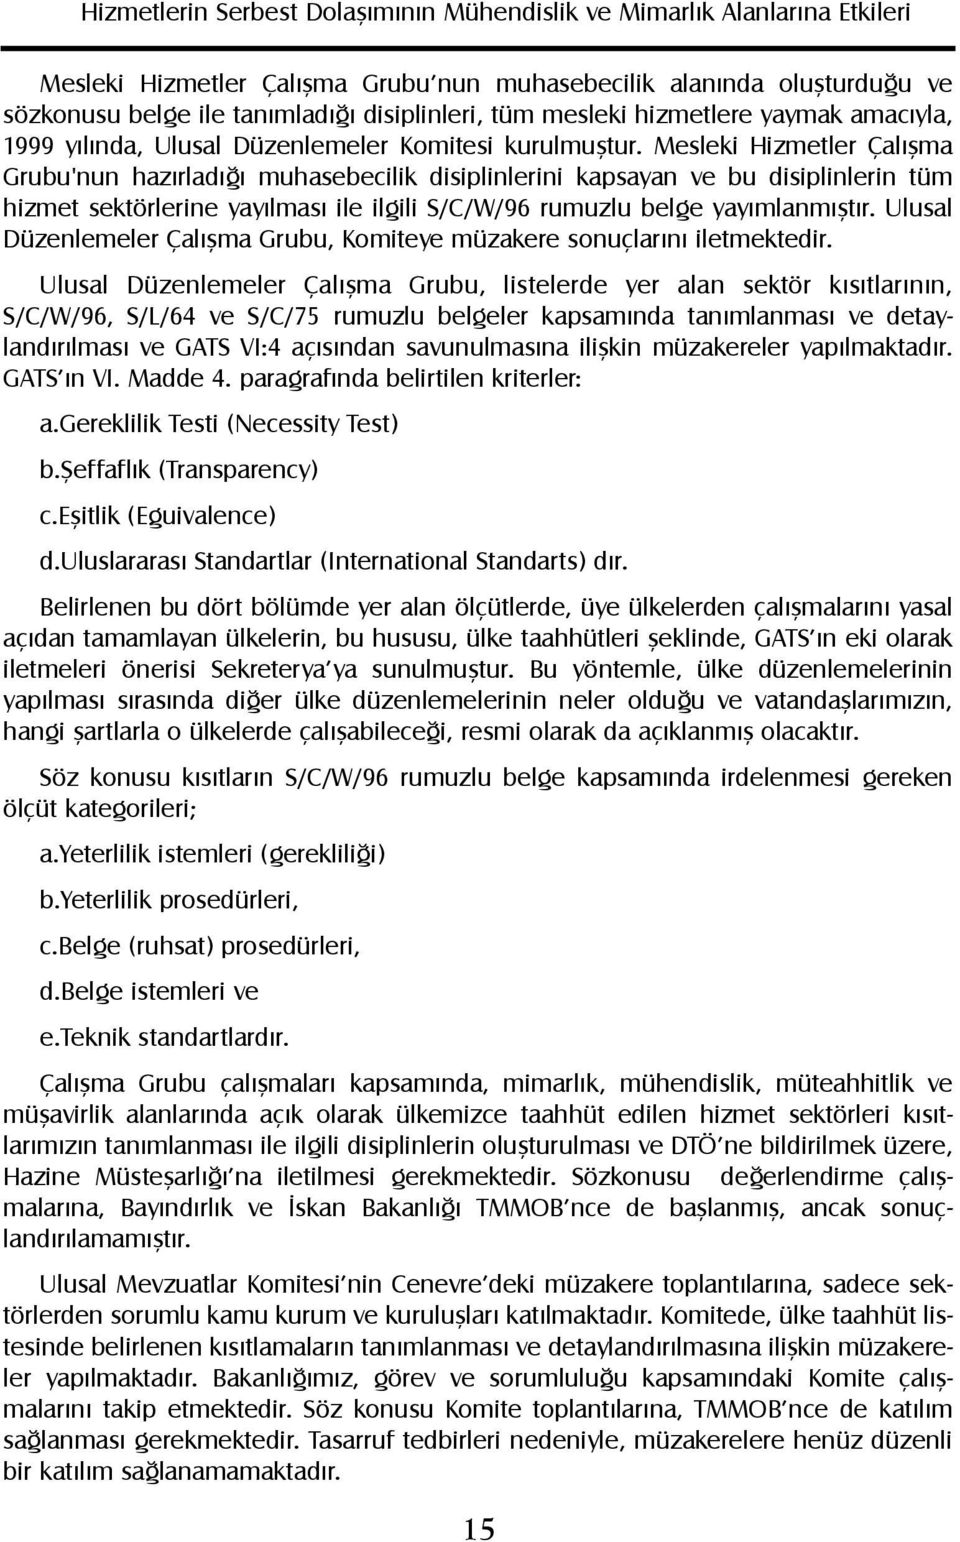 Mesleki Hizmetler Çalýþma Grubu'nun hazýrladýðý muhasebecilik disiplinlerini kapsayan ve bu disiplinlerin tüm hizmet sektörlerine yayýlmasý ile ilgili S/C/W/96 rumuzlu belge yayýmlanmýþtýr.